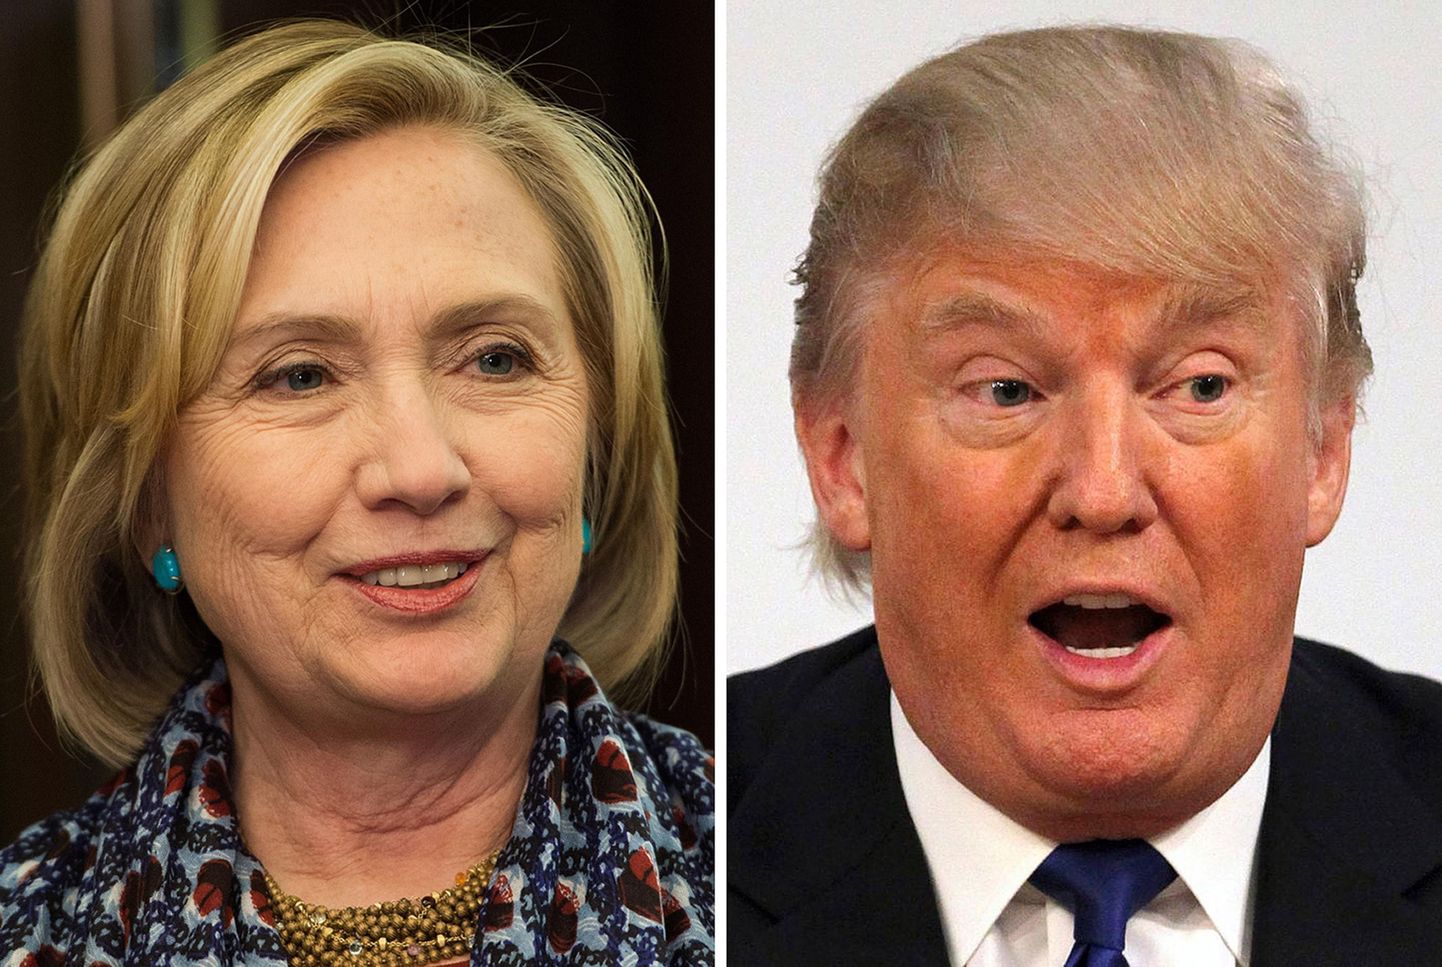 Clinton versus Trump. Kahe rivaali valimiskampaaniad on olnud pinnapealsed, pakkudes lihtsustatud vastandusi ja valikuid ning põhjustades lepitamatu kokkupõrke.